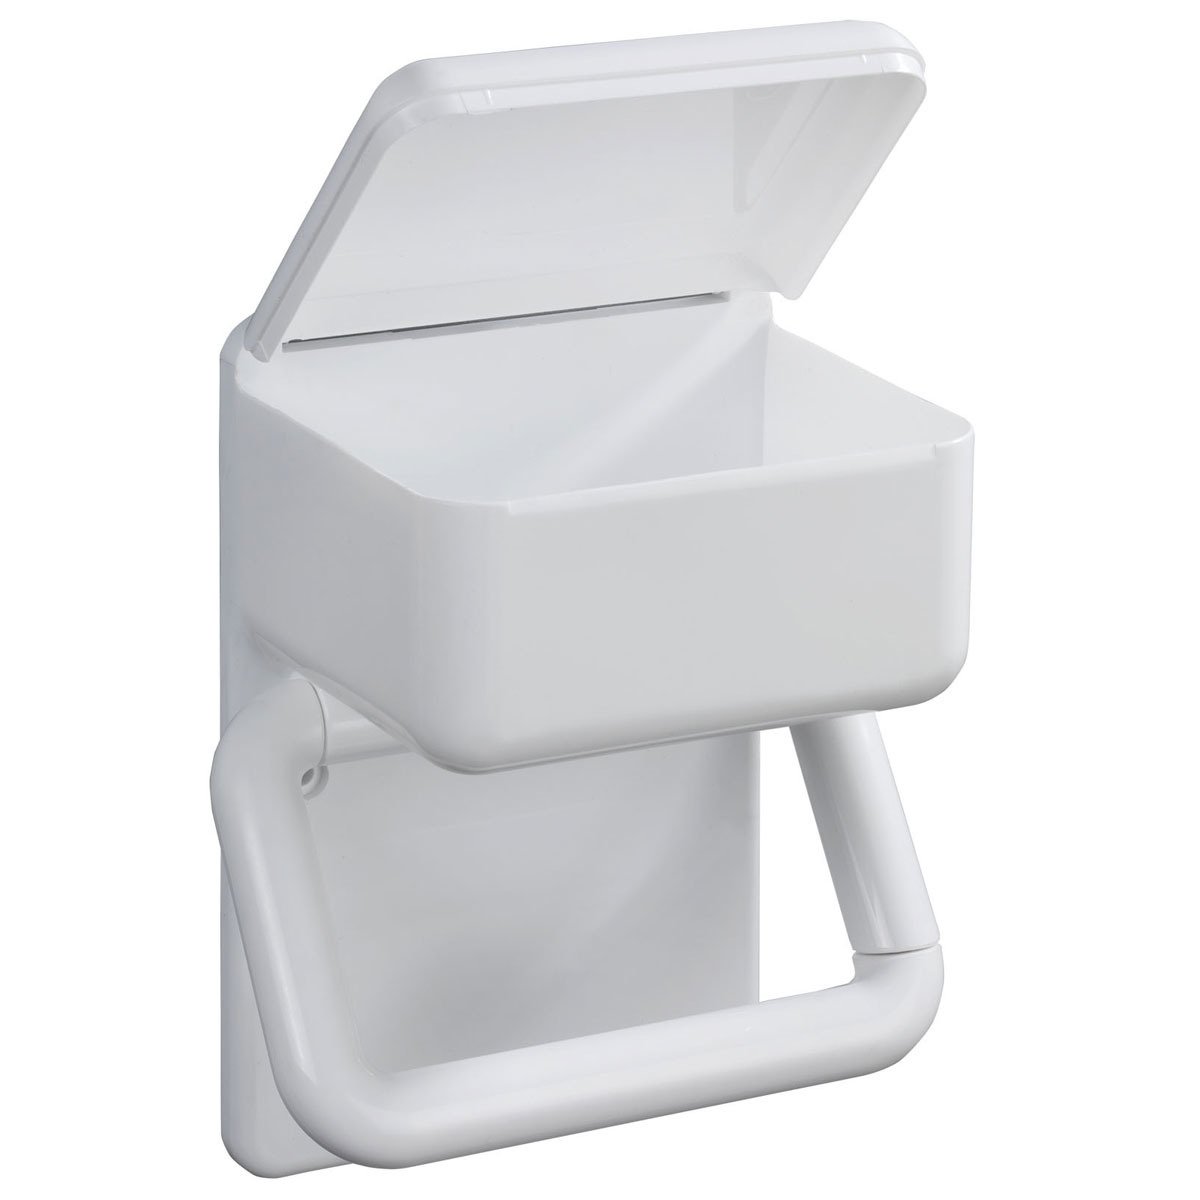 Toilettenpapierhalter 2 in 1 kaufen | home24